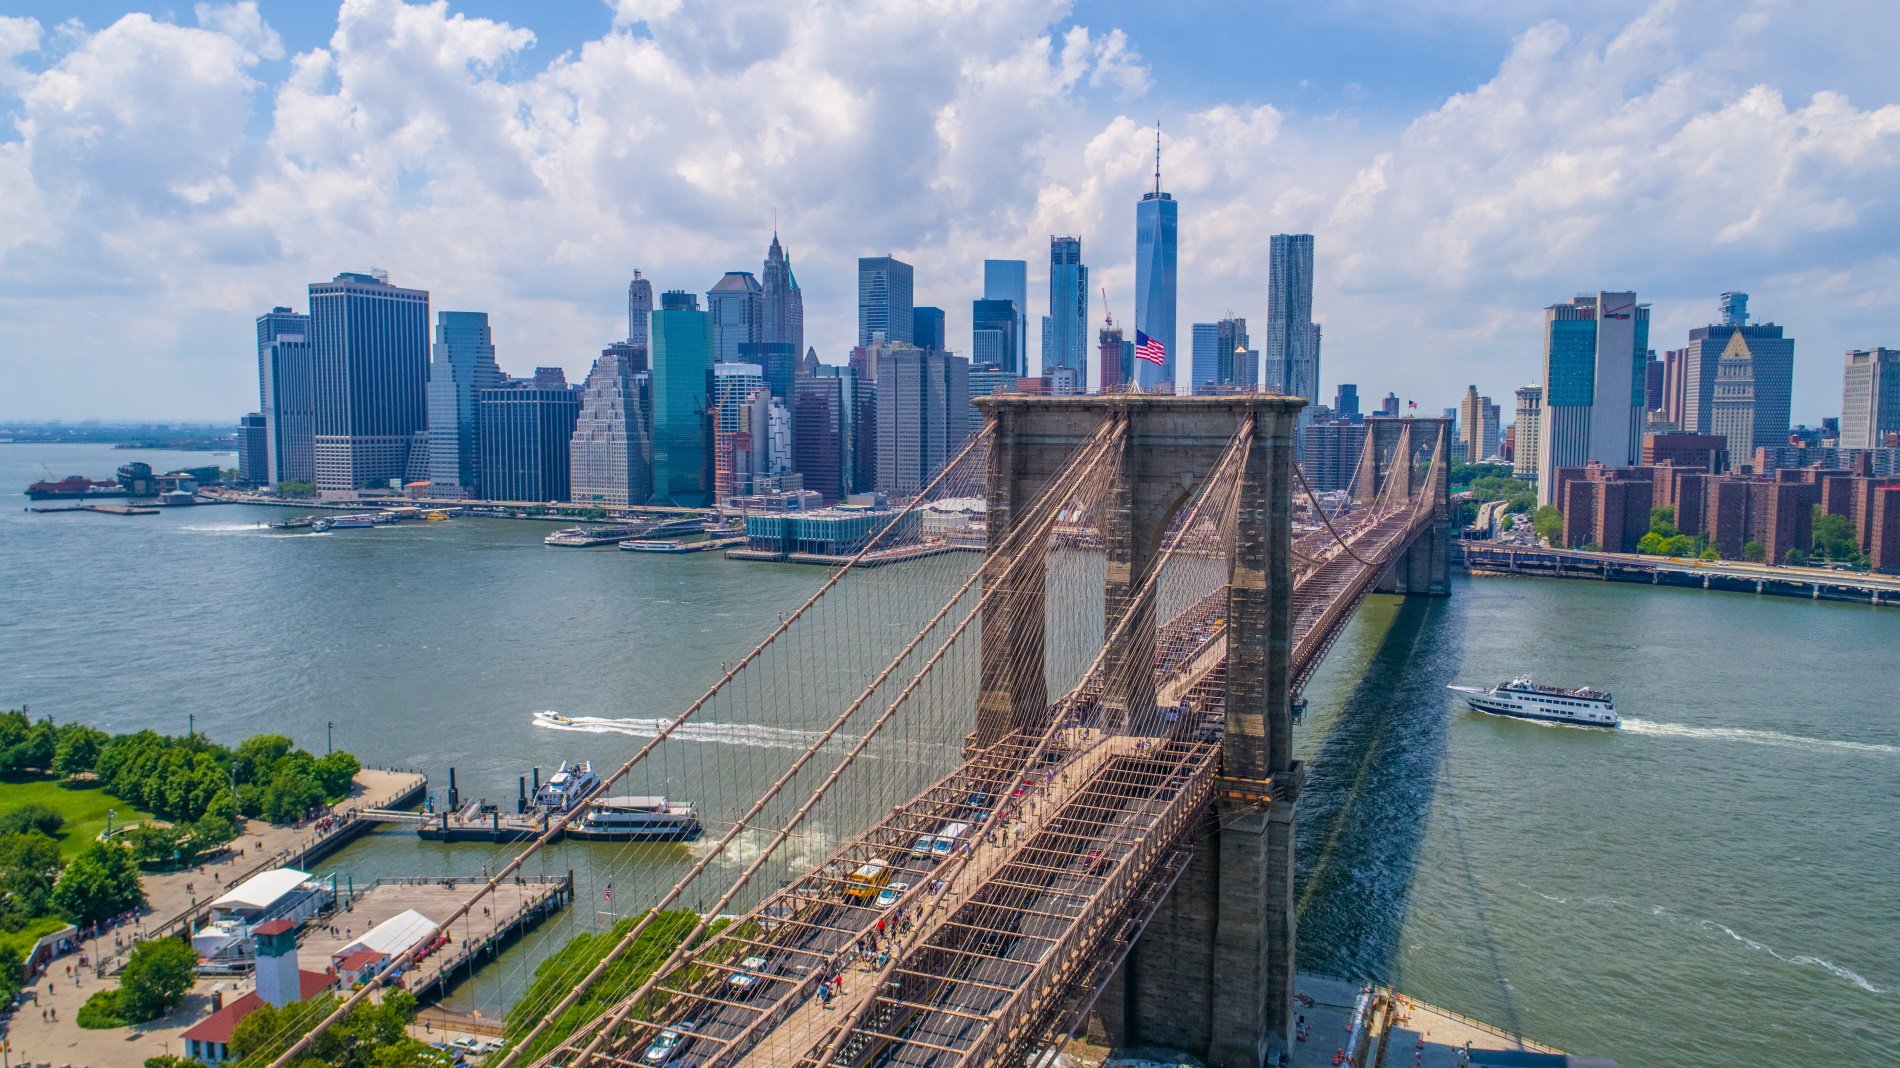 Nova York està en perill: la ciutat s'està enfonsant pel pes dels gratacels